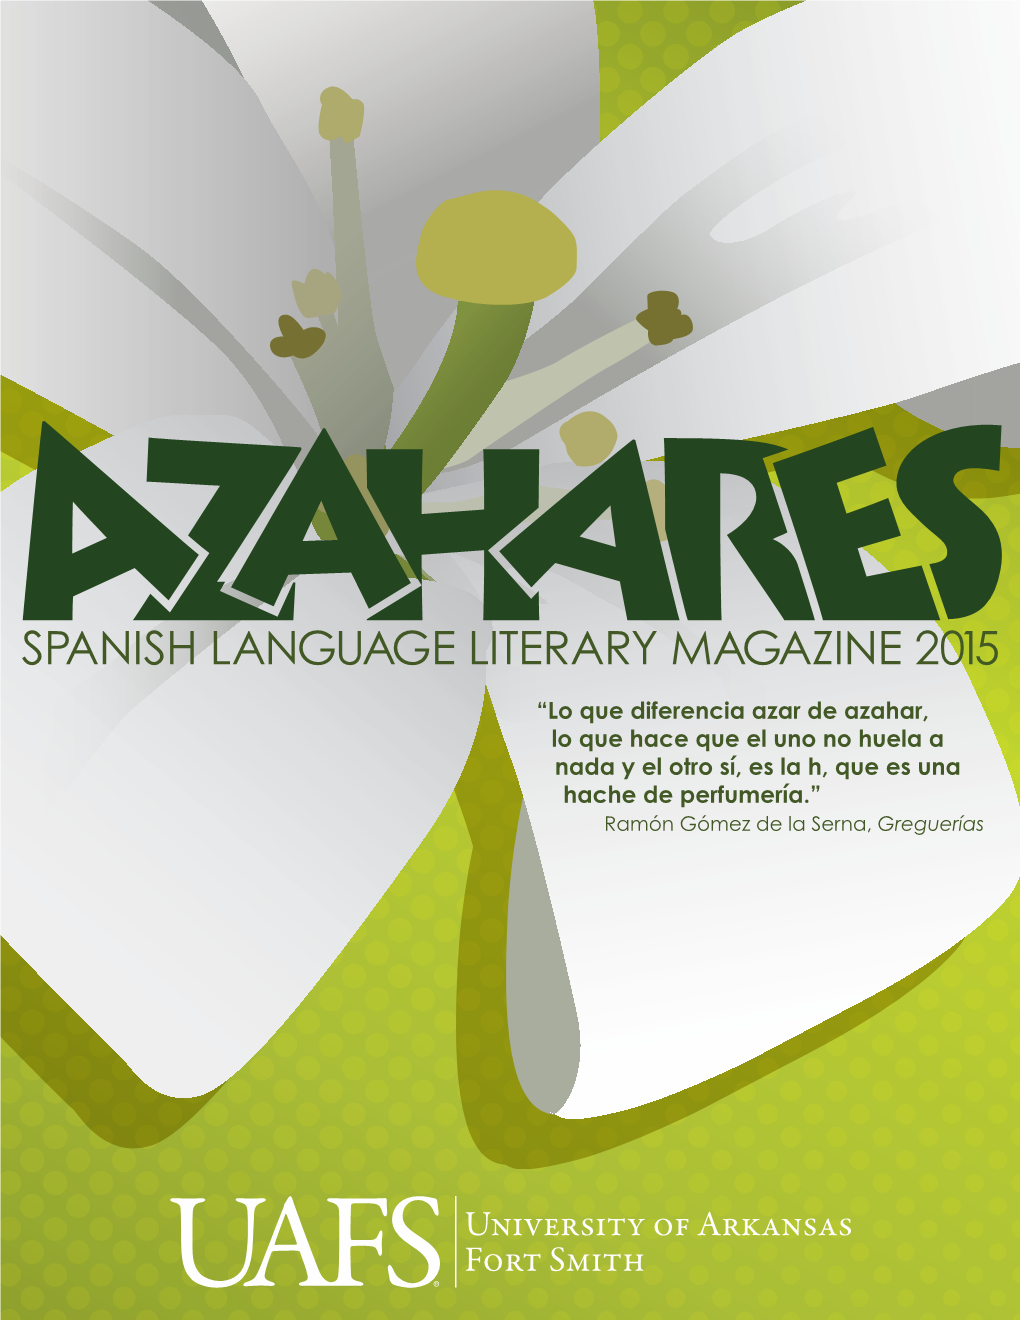 Spanish Language Literary Magazine 2015